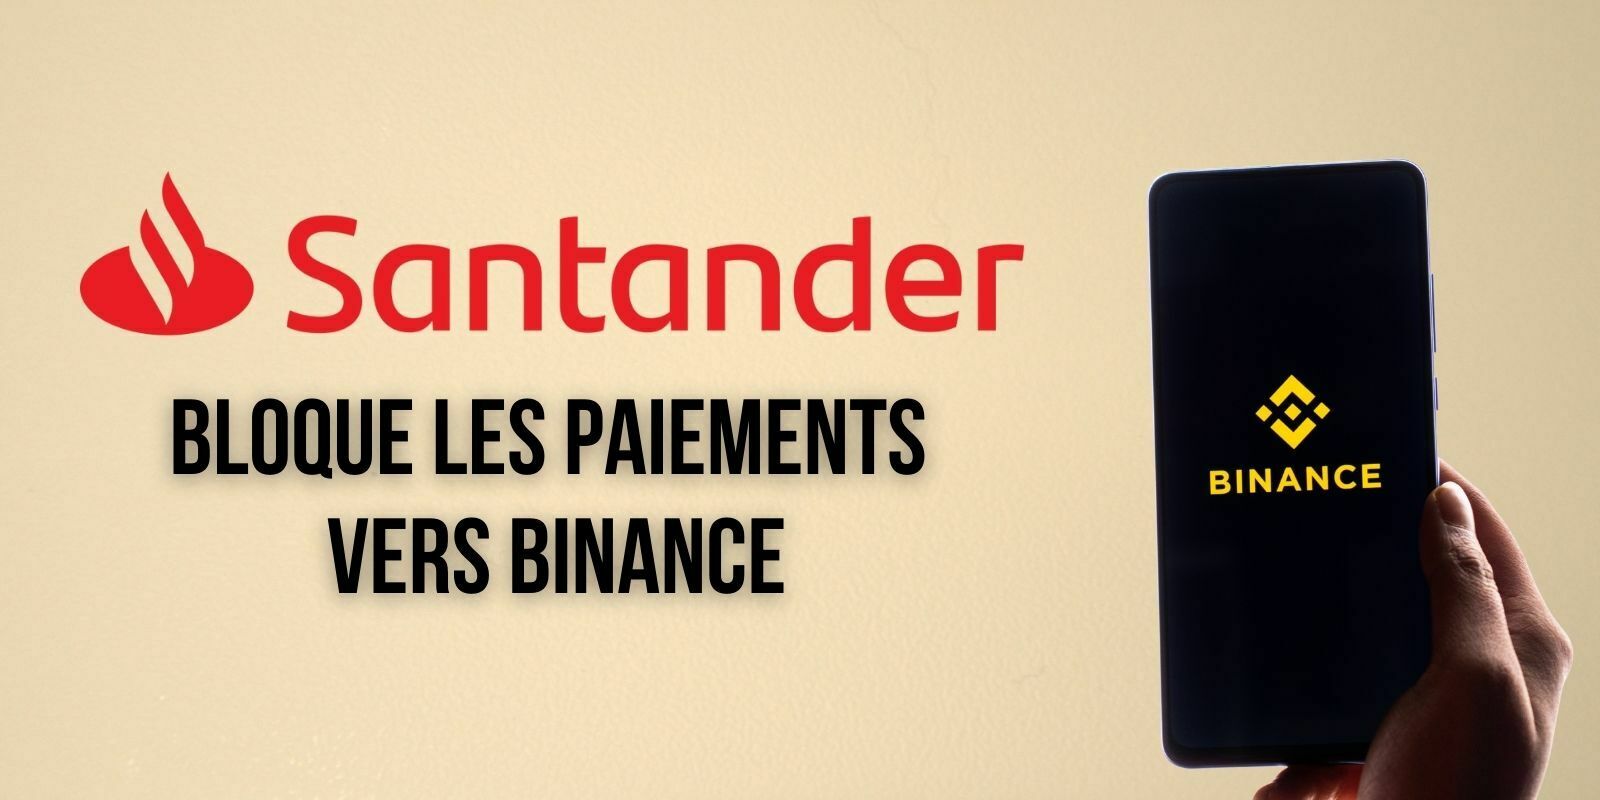 La branche britannique de Santander bloque les paiements vers Binance pour « protéger ses clients »